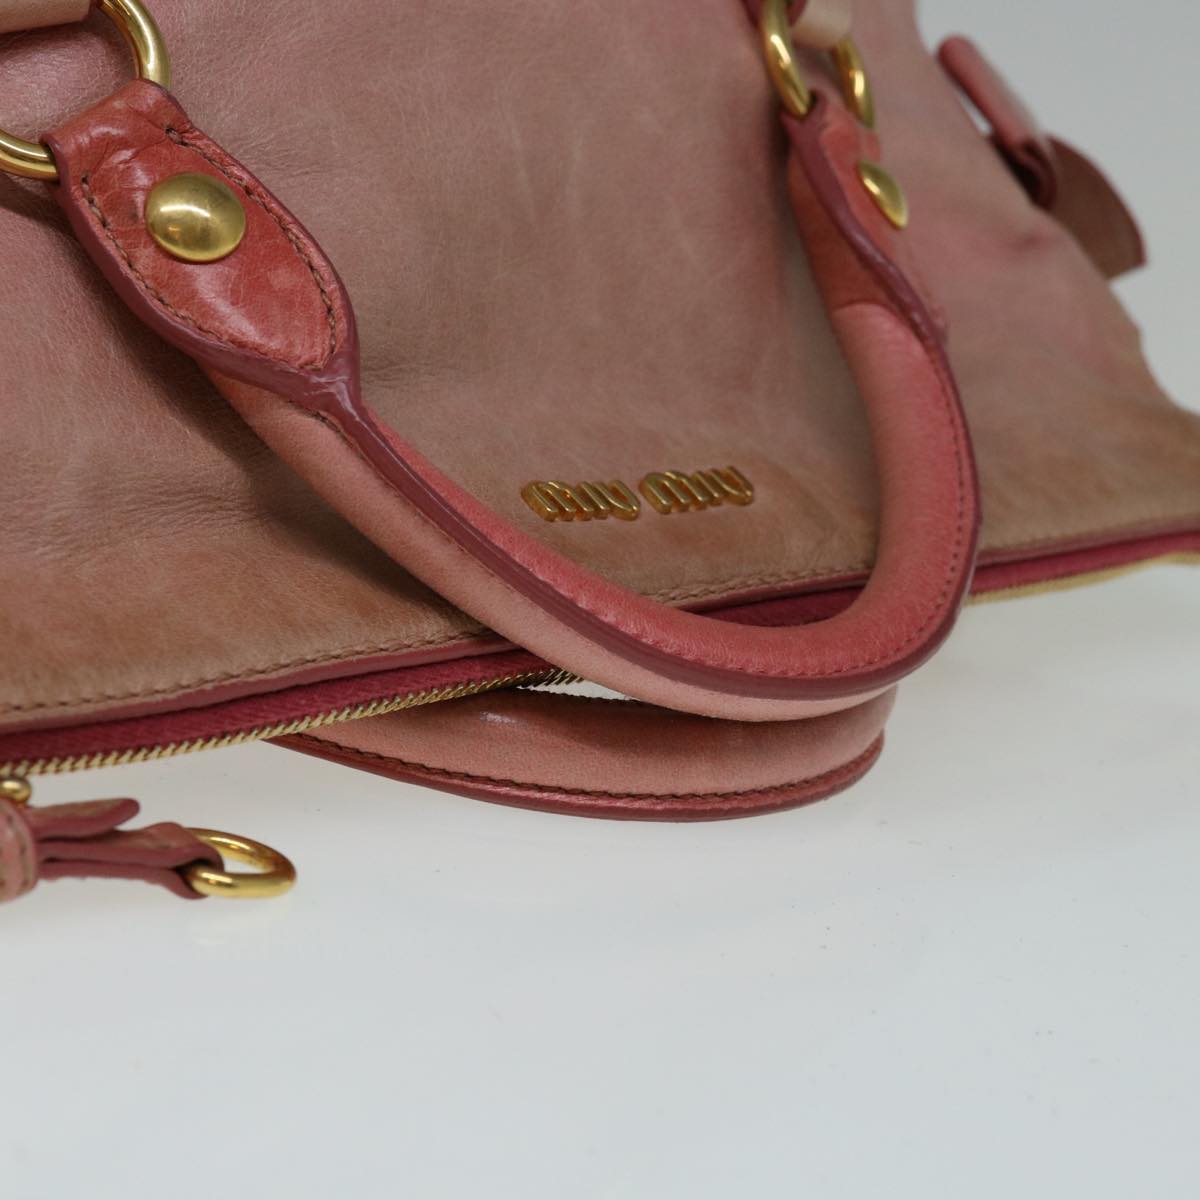 Miu Miu Hand Bag Leather 2way Pink Auth 66293